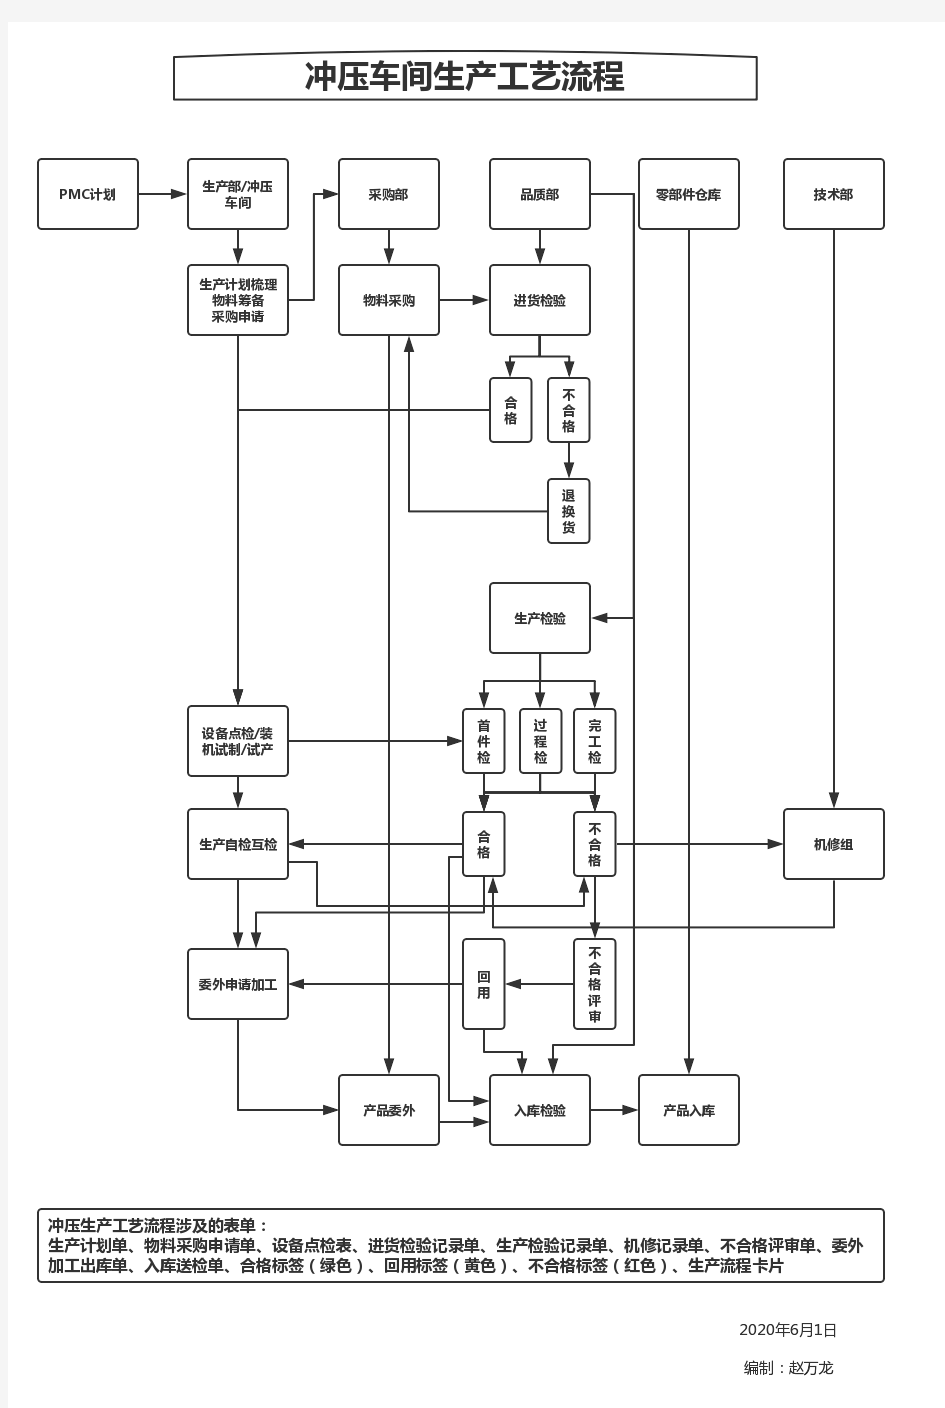 冲压车间生产工艺流程图